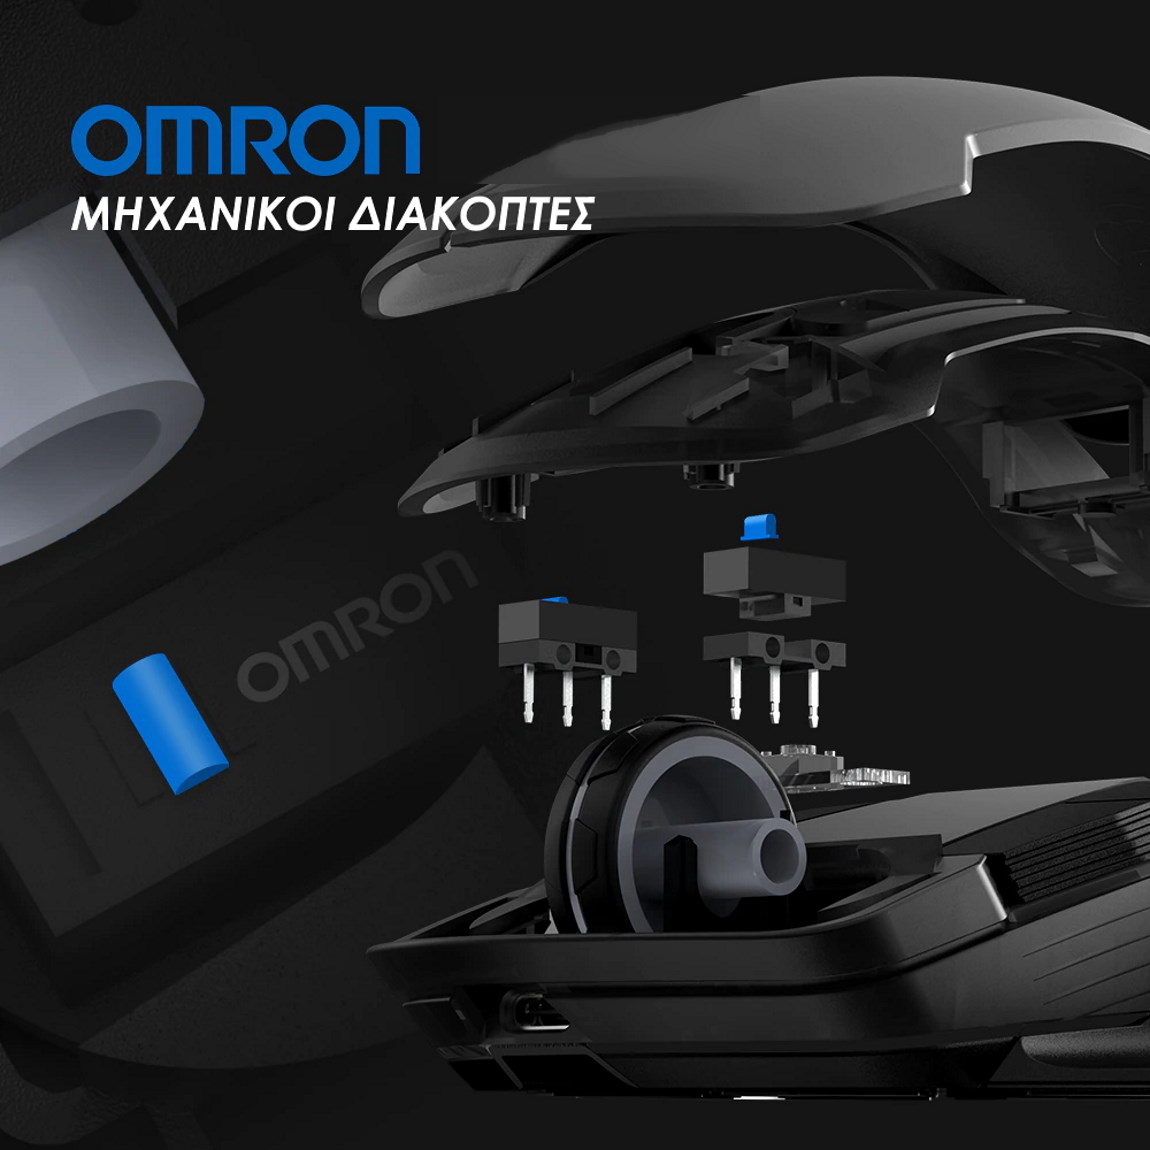 Gamesir GM300 gaming mouse μηχανικοί διακόπτες OMRON